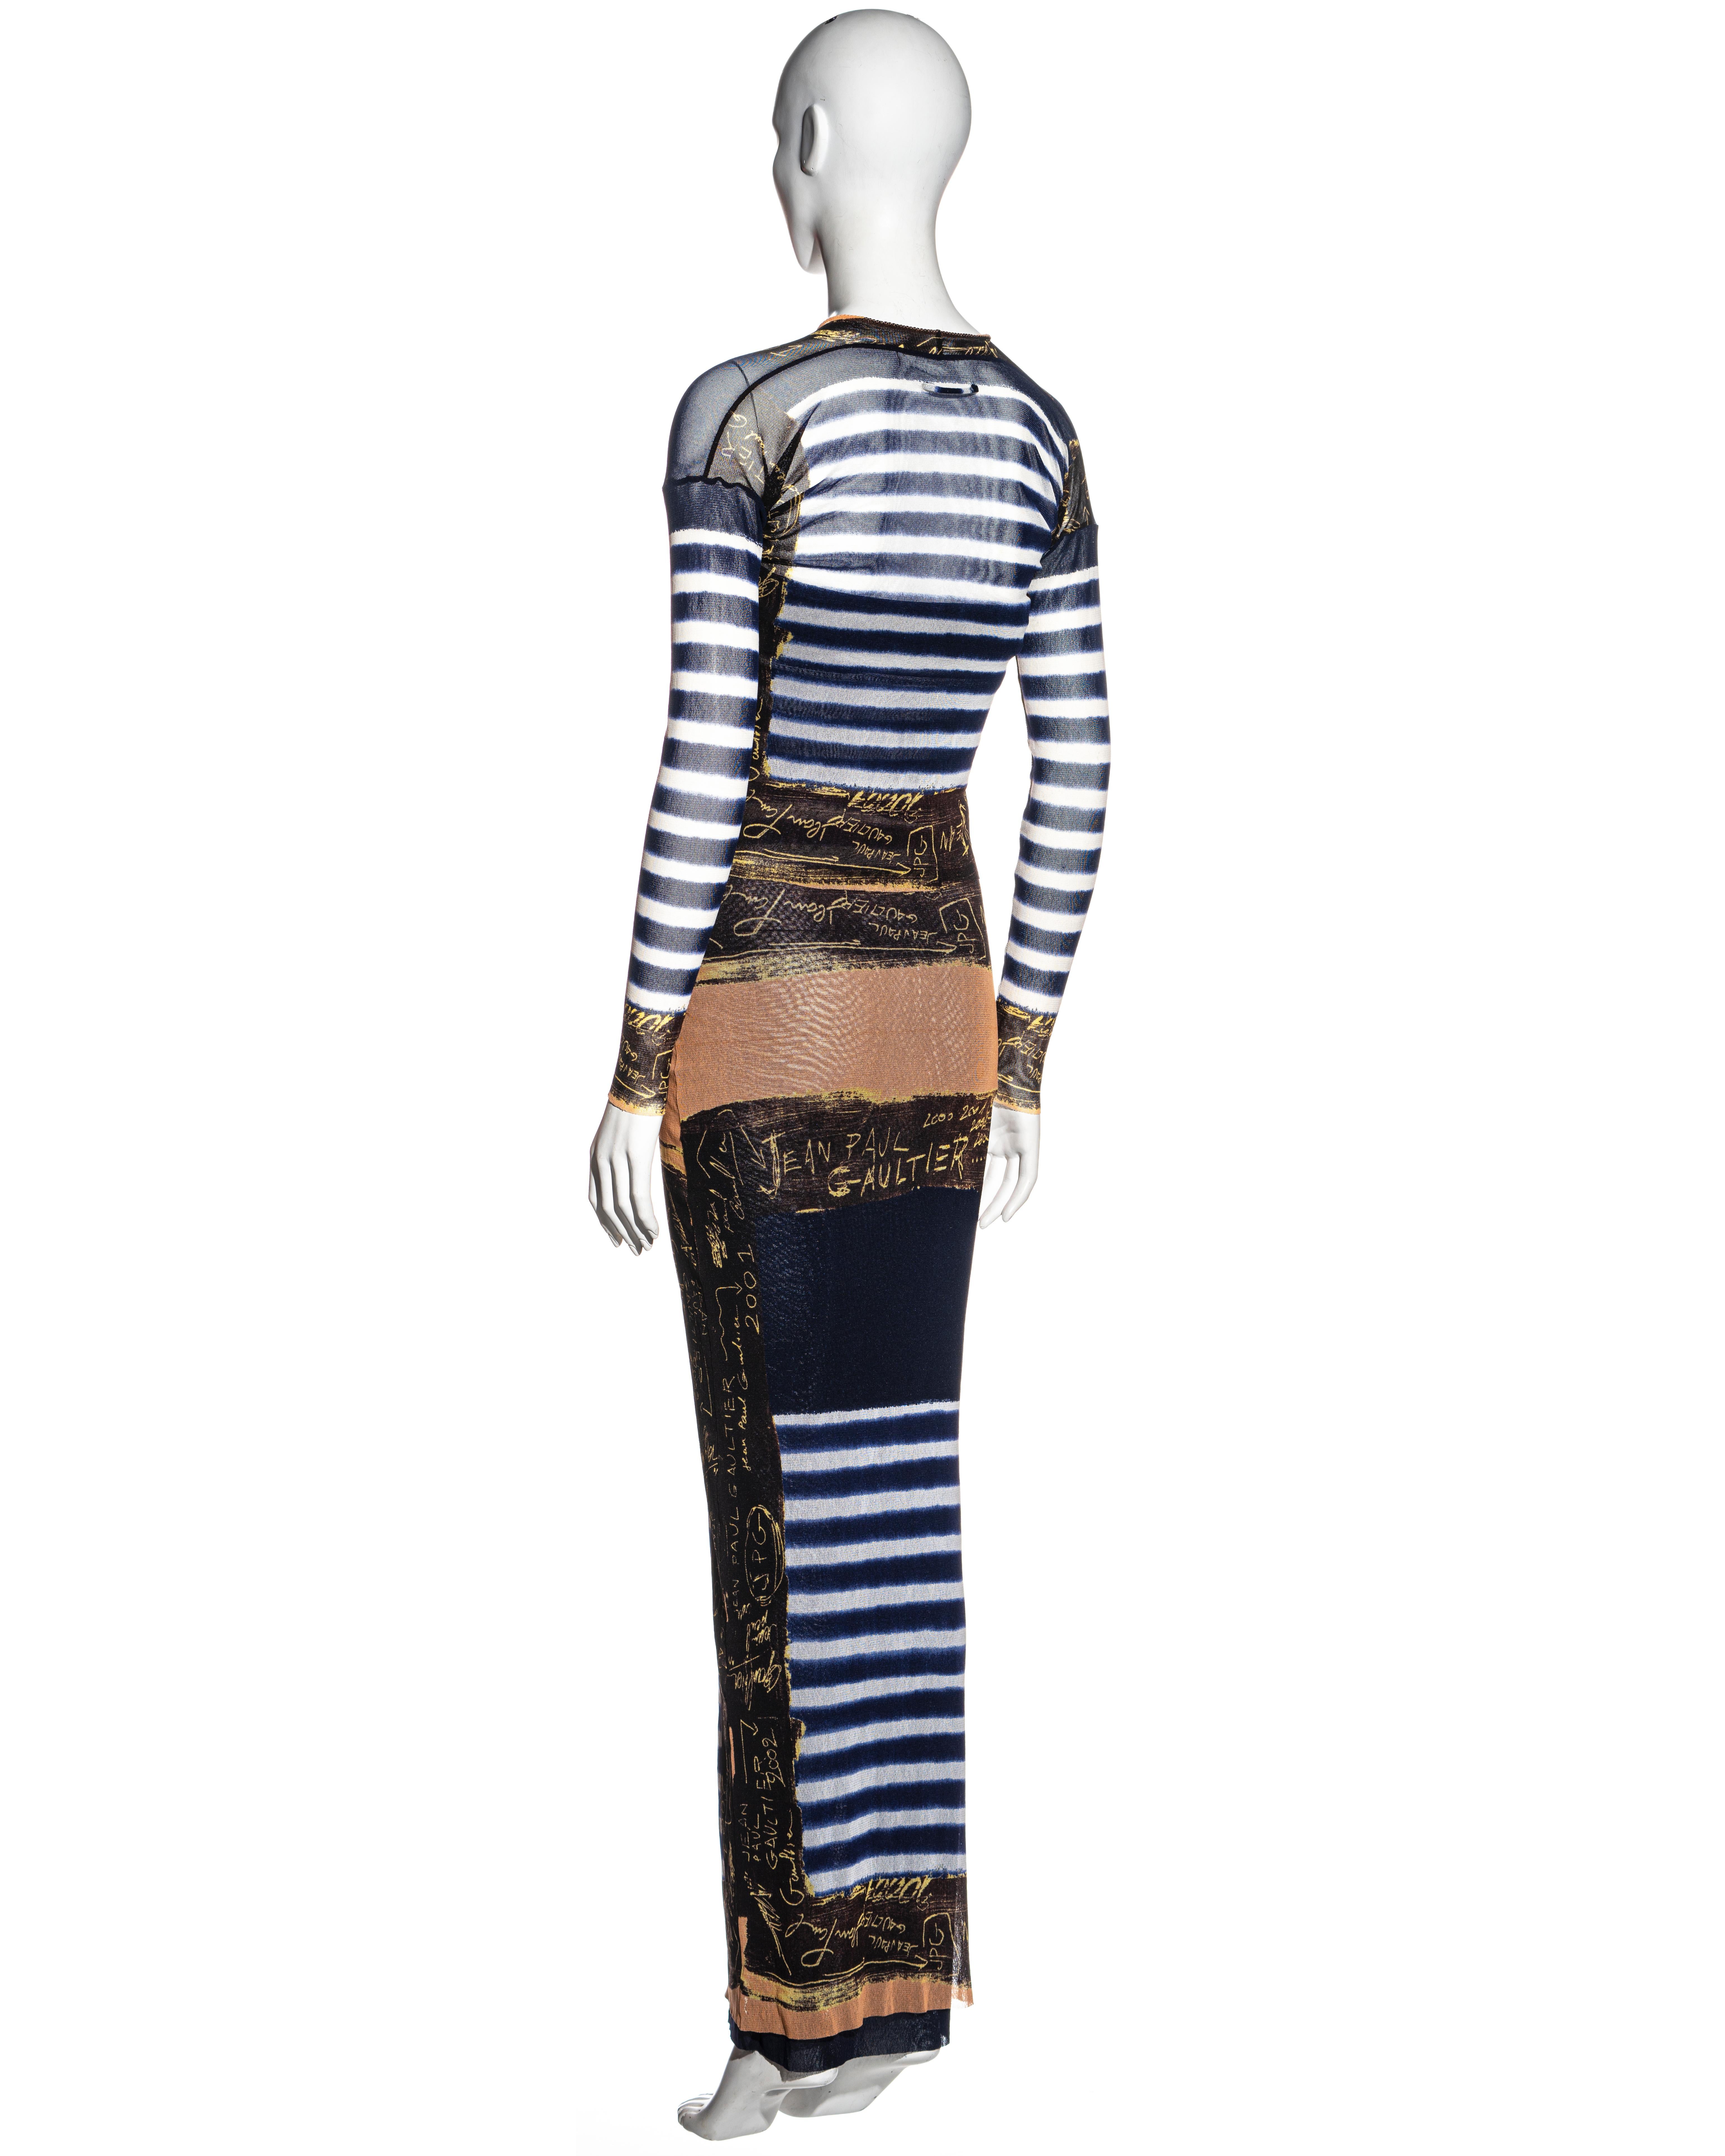 Jean Paul Gaultier Marinefarben gestreiftes Kleid und Strickjacke aus Nylonnetz, ca. 2001 2